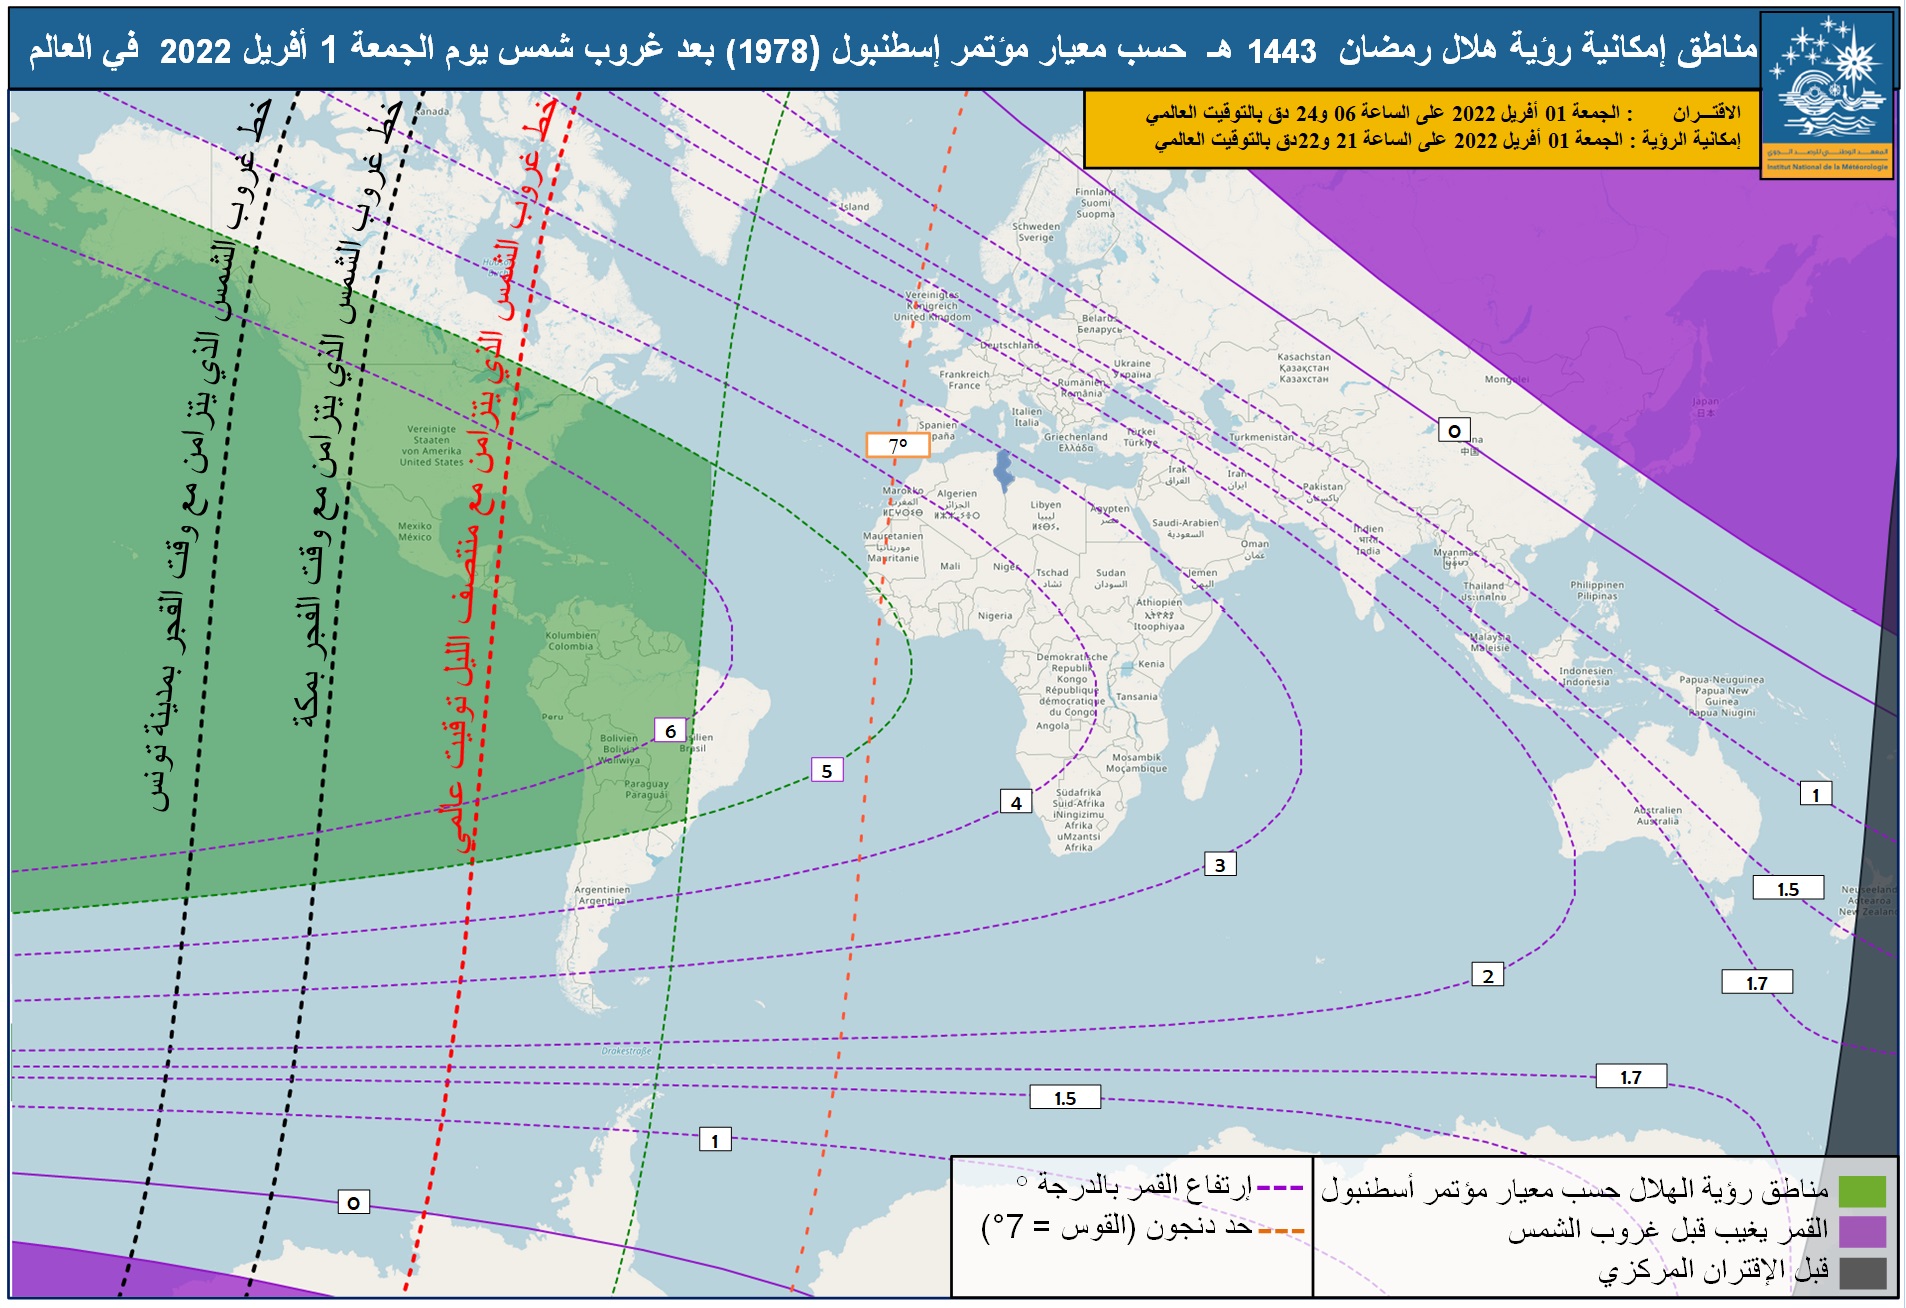            مناطق إمكانية رؤية هلال رمضان  1443 هـ  حسب معيار مؤتمر إسطنبول (1978) بعد غروب شمس يوم الجمعة 1 أفريل 2022  في العالم 